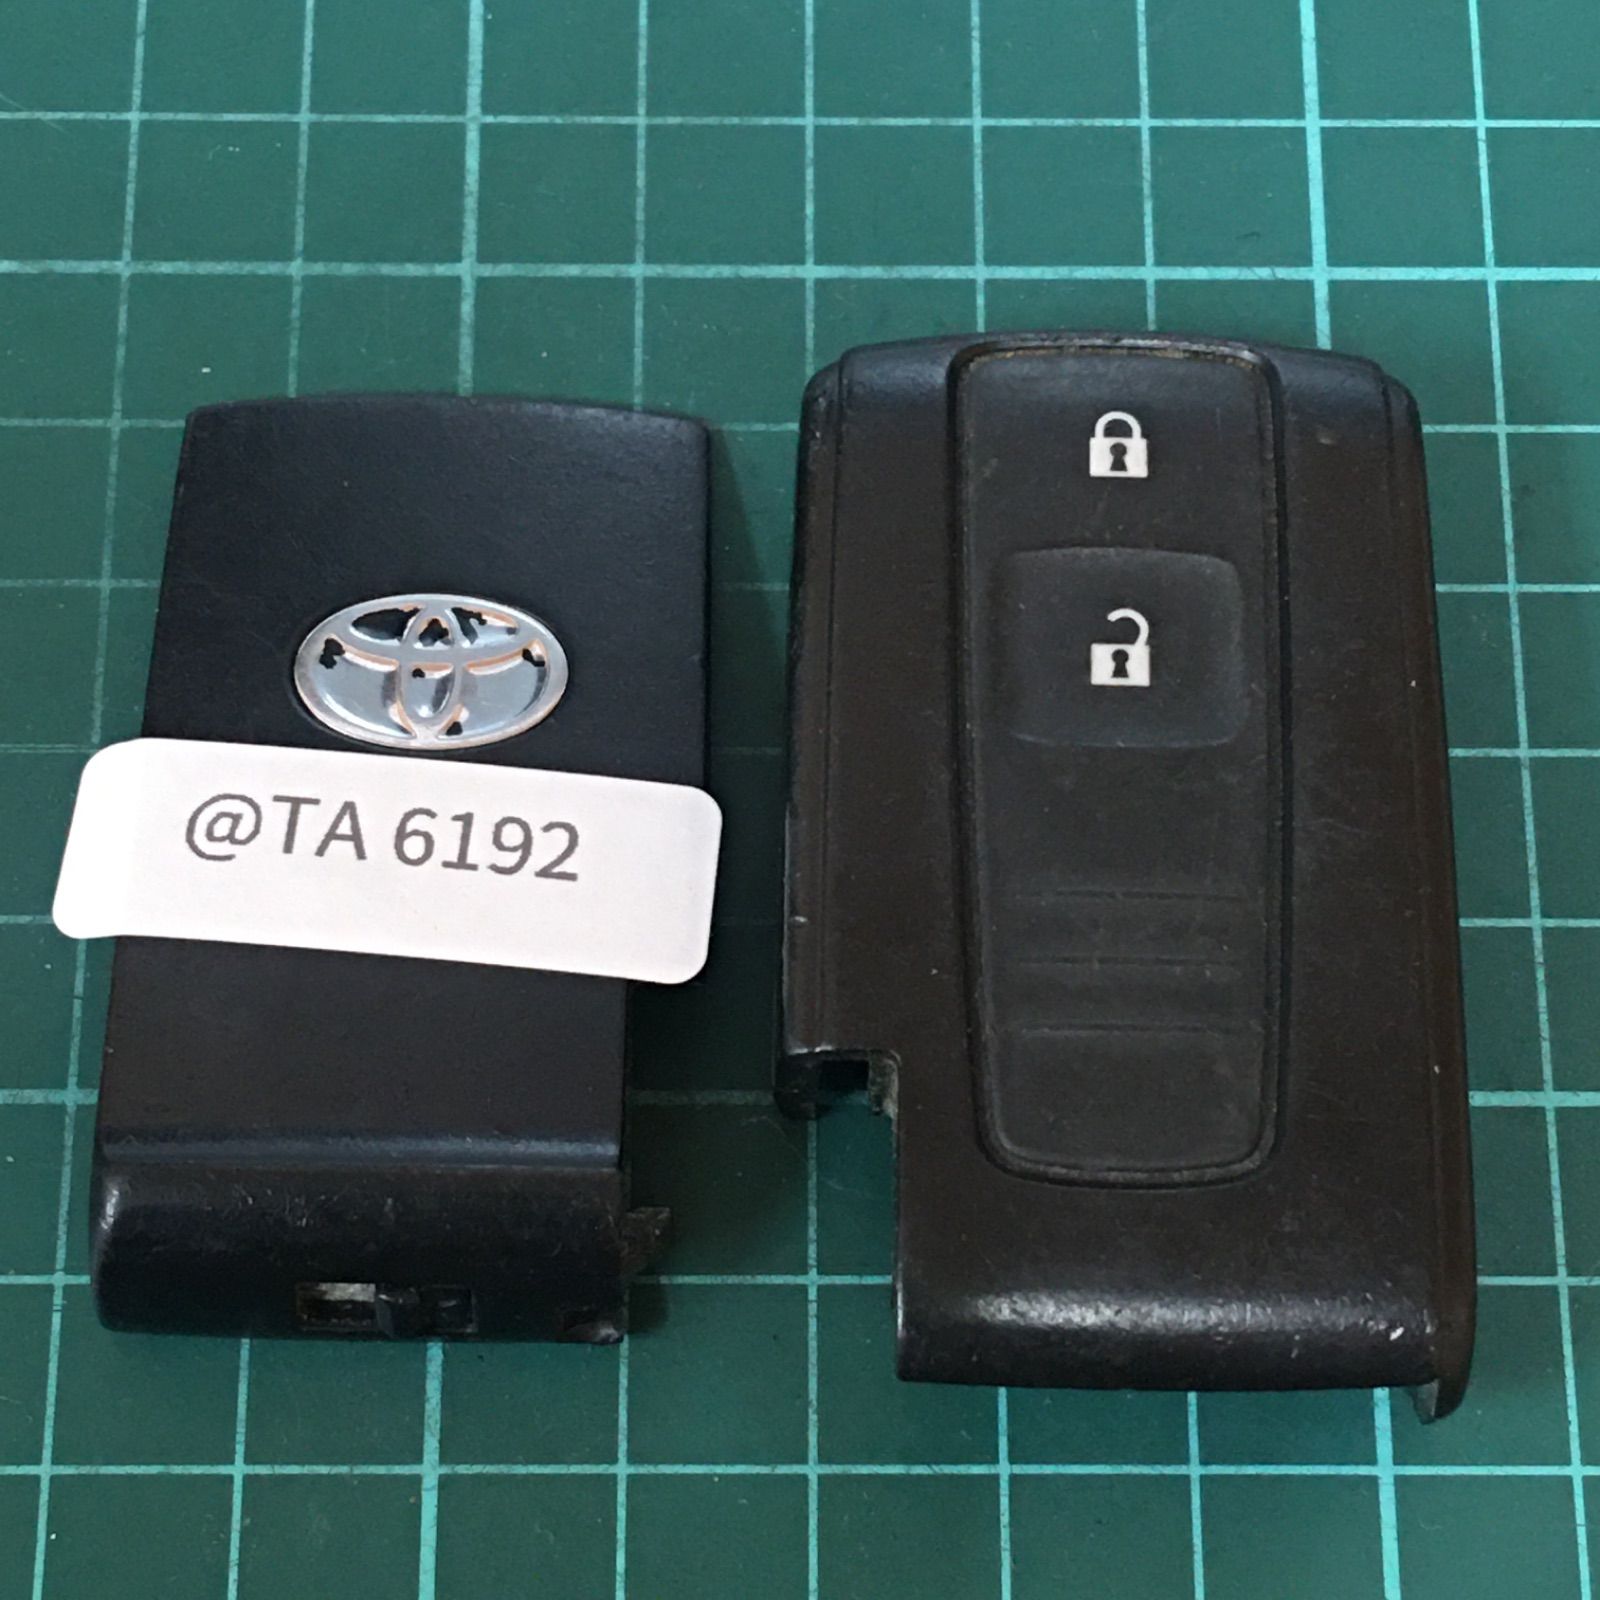 トヨタ スマートキー キーレス リモコン 鍵 2B 2ボタン プリウス bB パッソ ラッシュ テリオス 刻印 A 緑ランプ 動作確認済 K60457